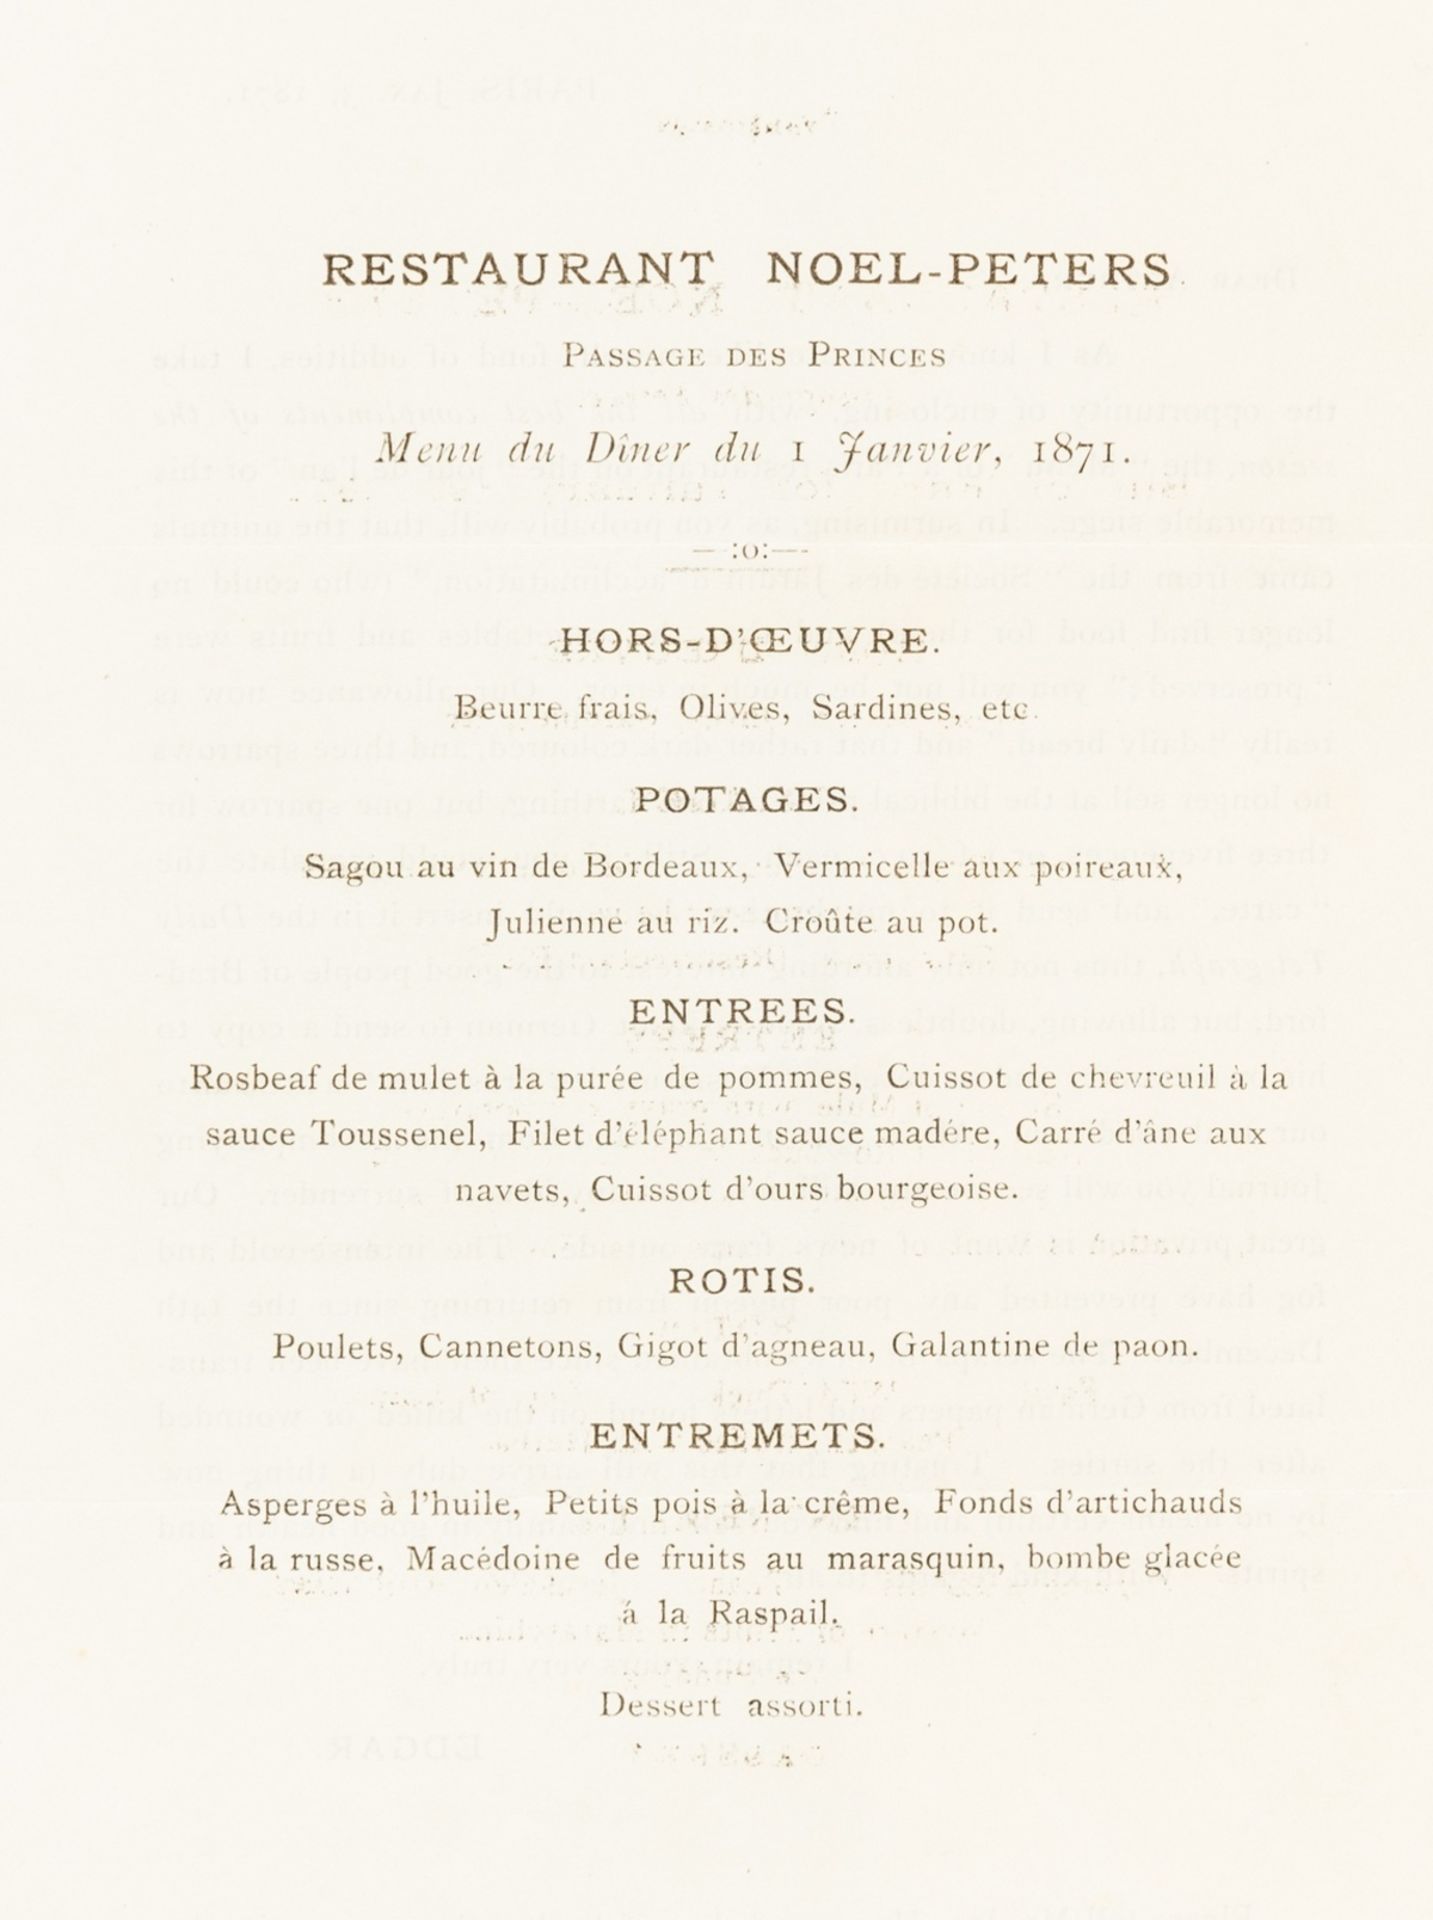 Siege of Paris (1870-1871).- Restaurant Noel-Peters. Menu du Diner du 1 Janvier 1871, Paris, [1871].